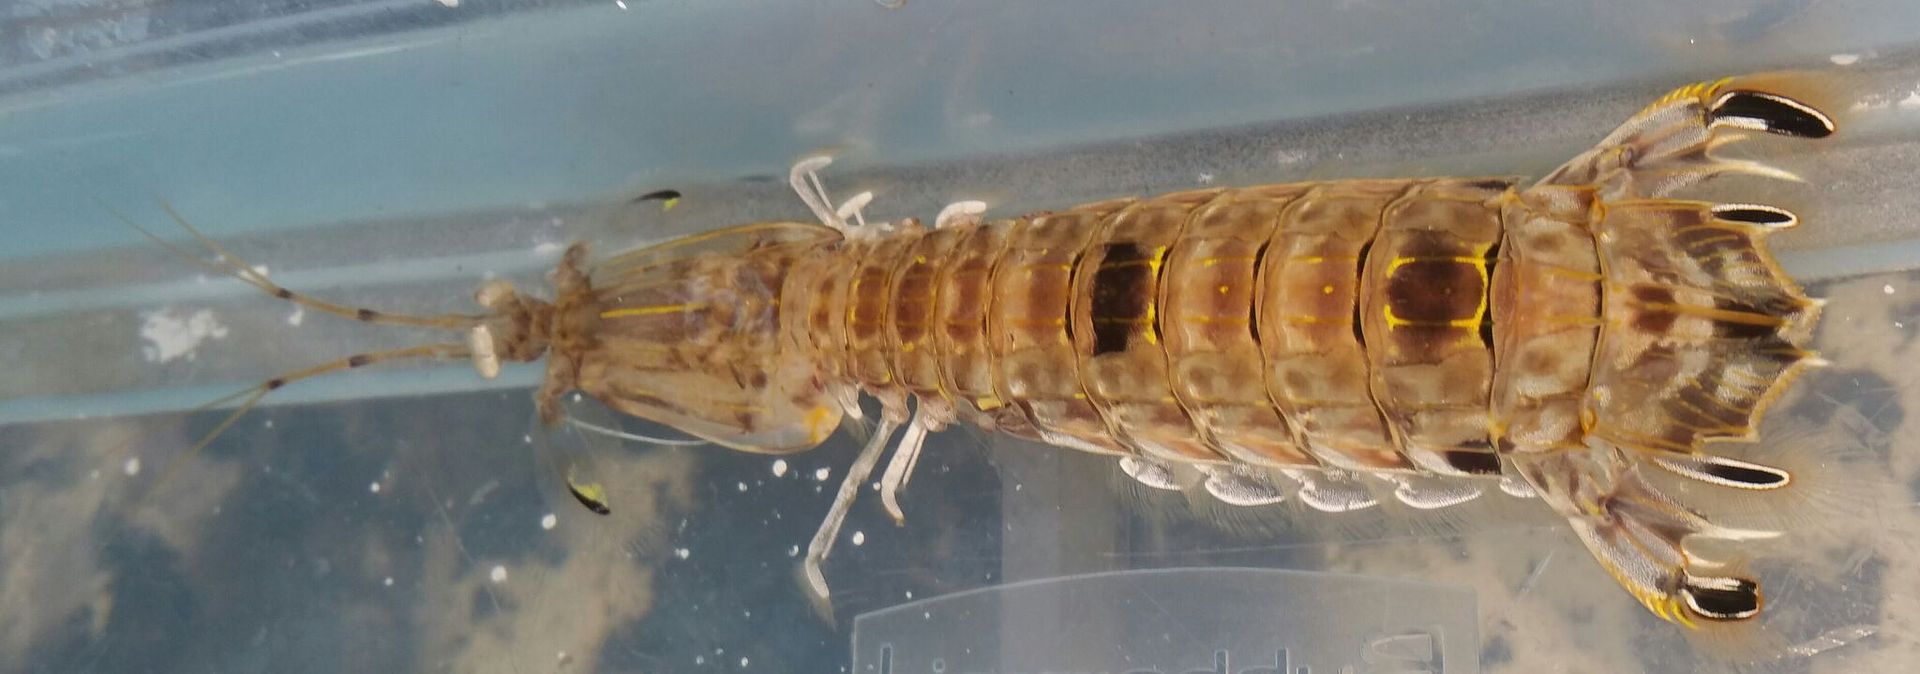 unspecified zps6nordtj3 - Mantis Shrimp & Horseshoe Crabs in @ Tropicorium!!!